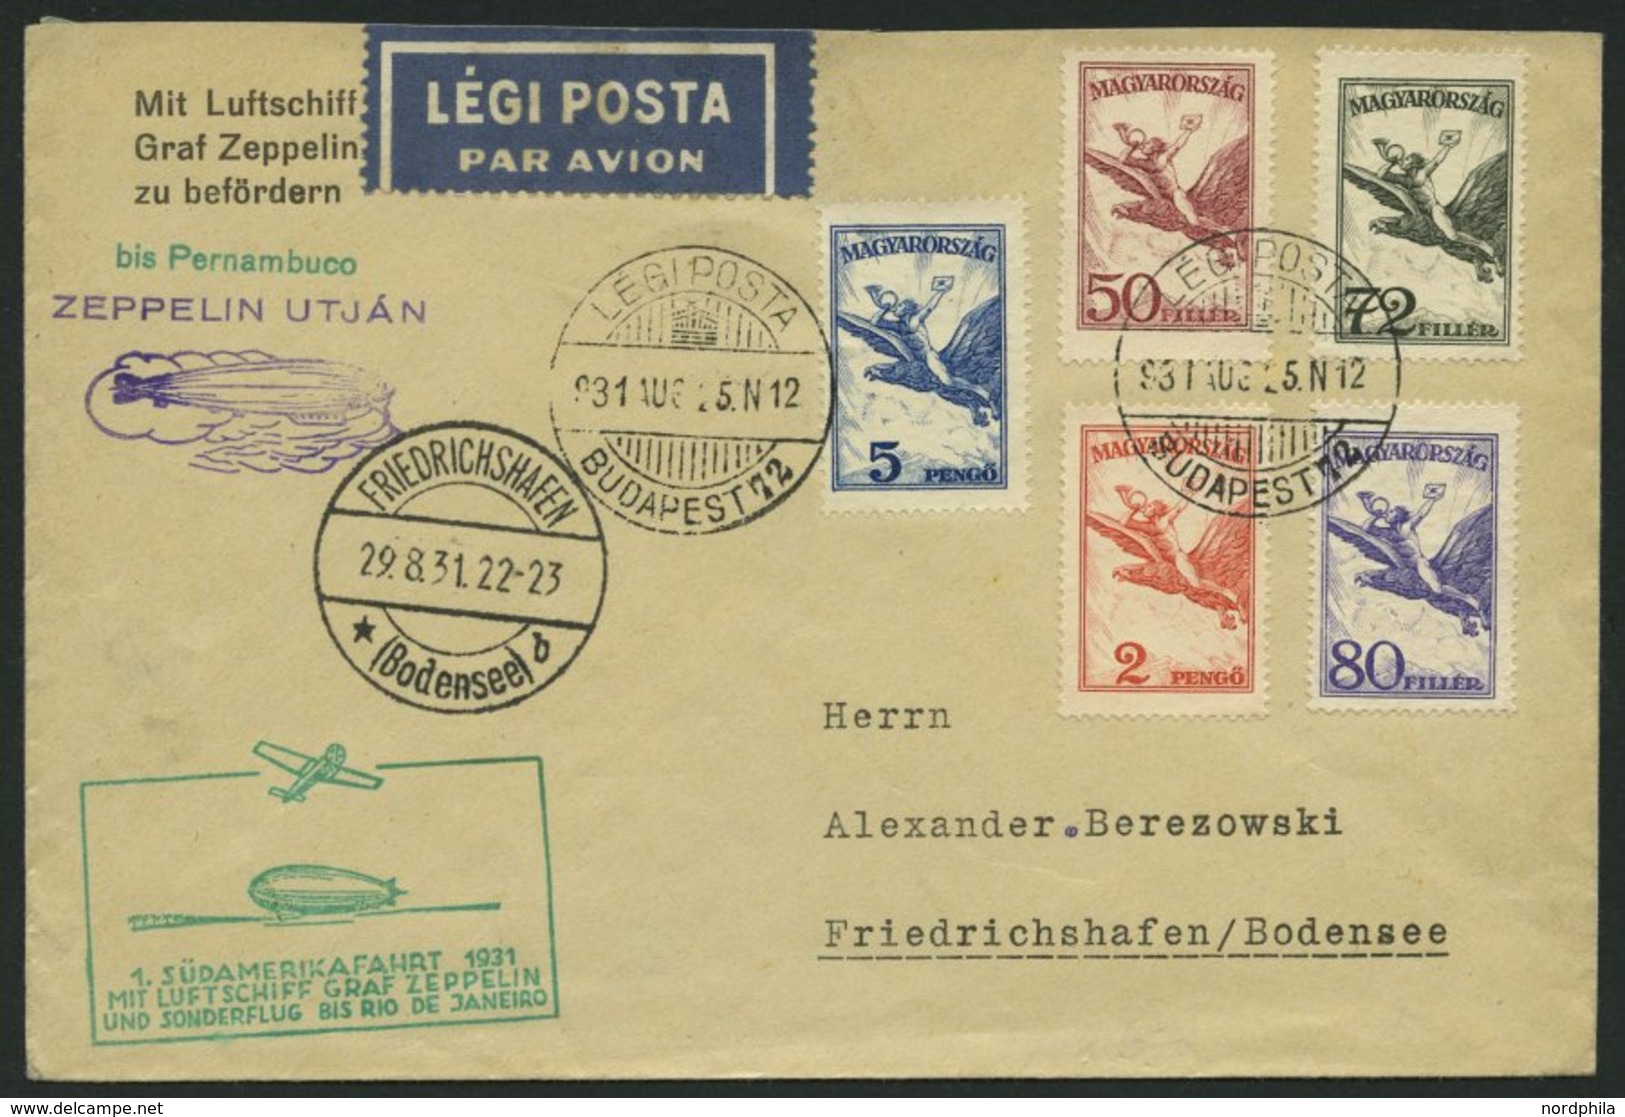 ZULEITUNGSPOST 124Ca BRIEF, Ungarn: 1931, 1. Südamerikafahrt, Bis Rio De Janeiro, Prachtbrief - Zeppeline